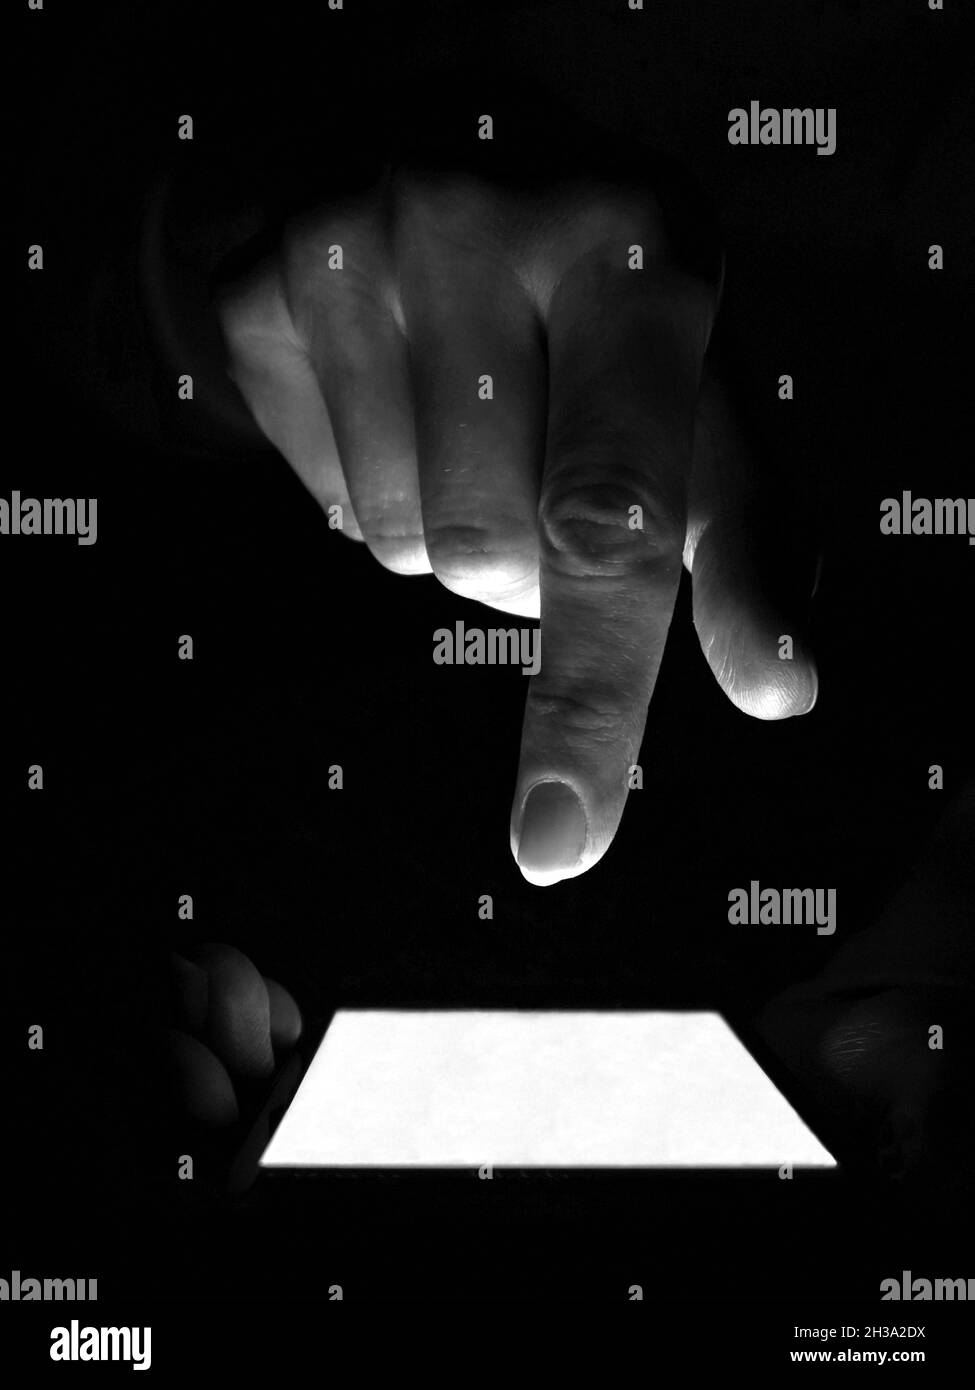 L'utilisateur anonyme d'Internet tient un smartphone dans l'obscurité et appuie sur l'écran.Le concept de la criminalité sur Internet Banque D'Images